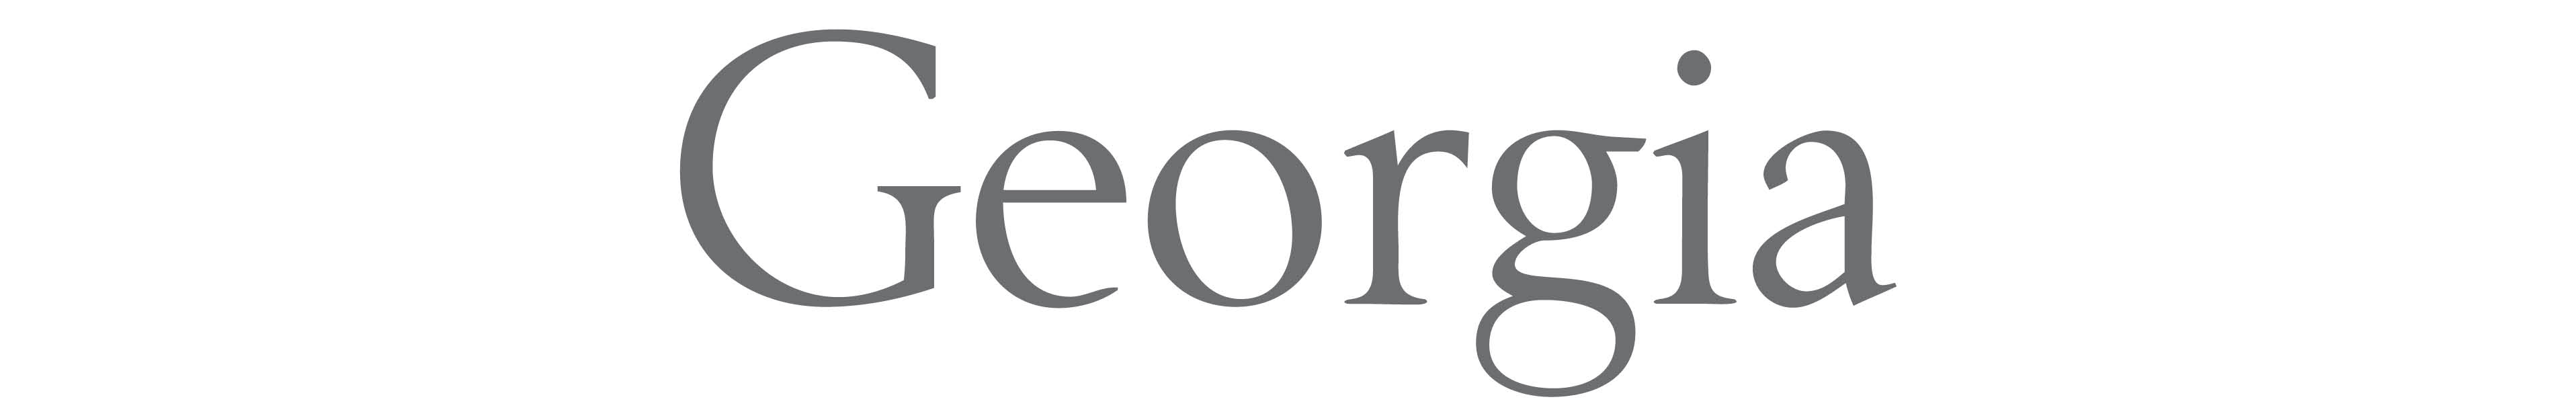 Georgia design Trade